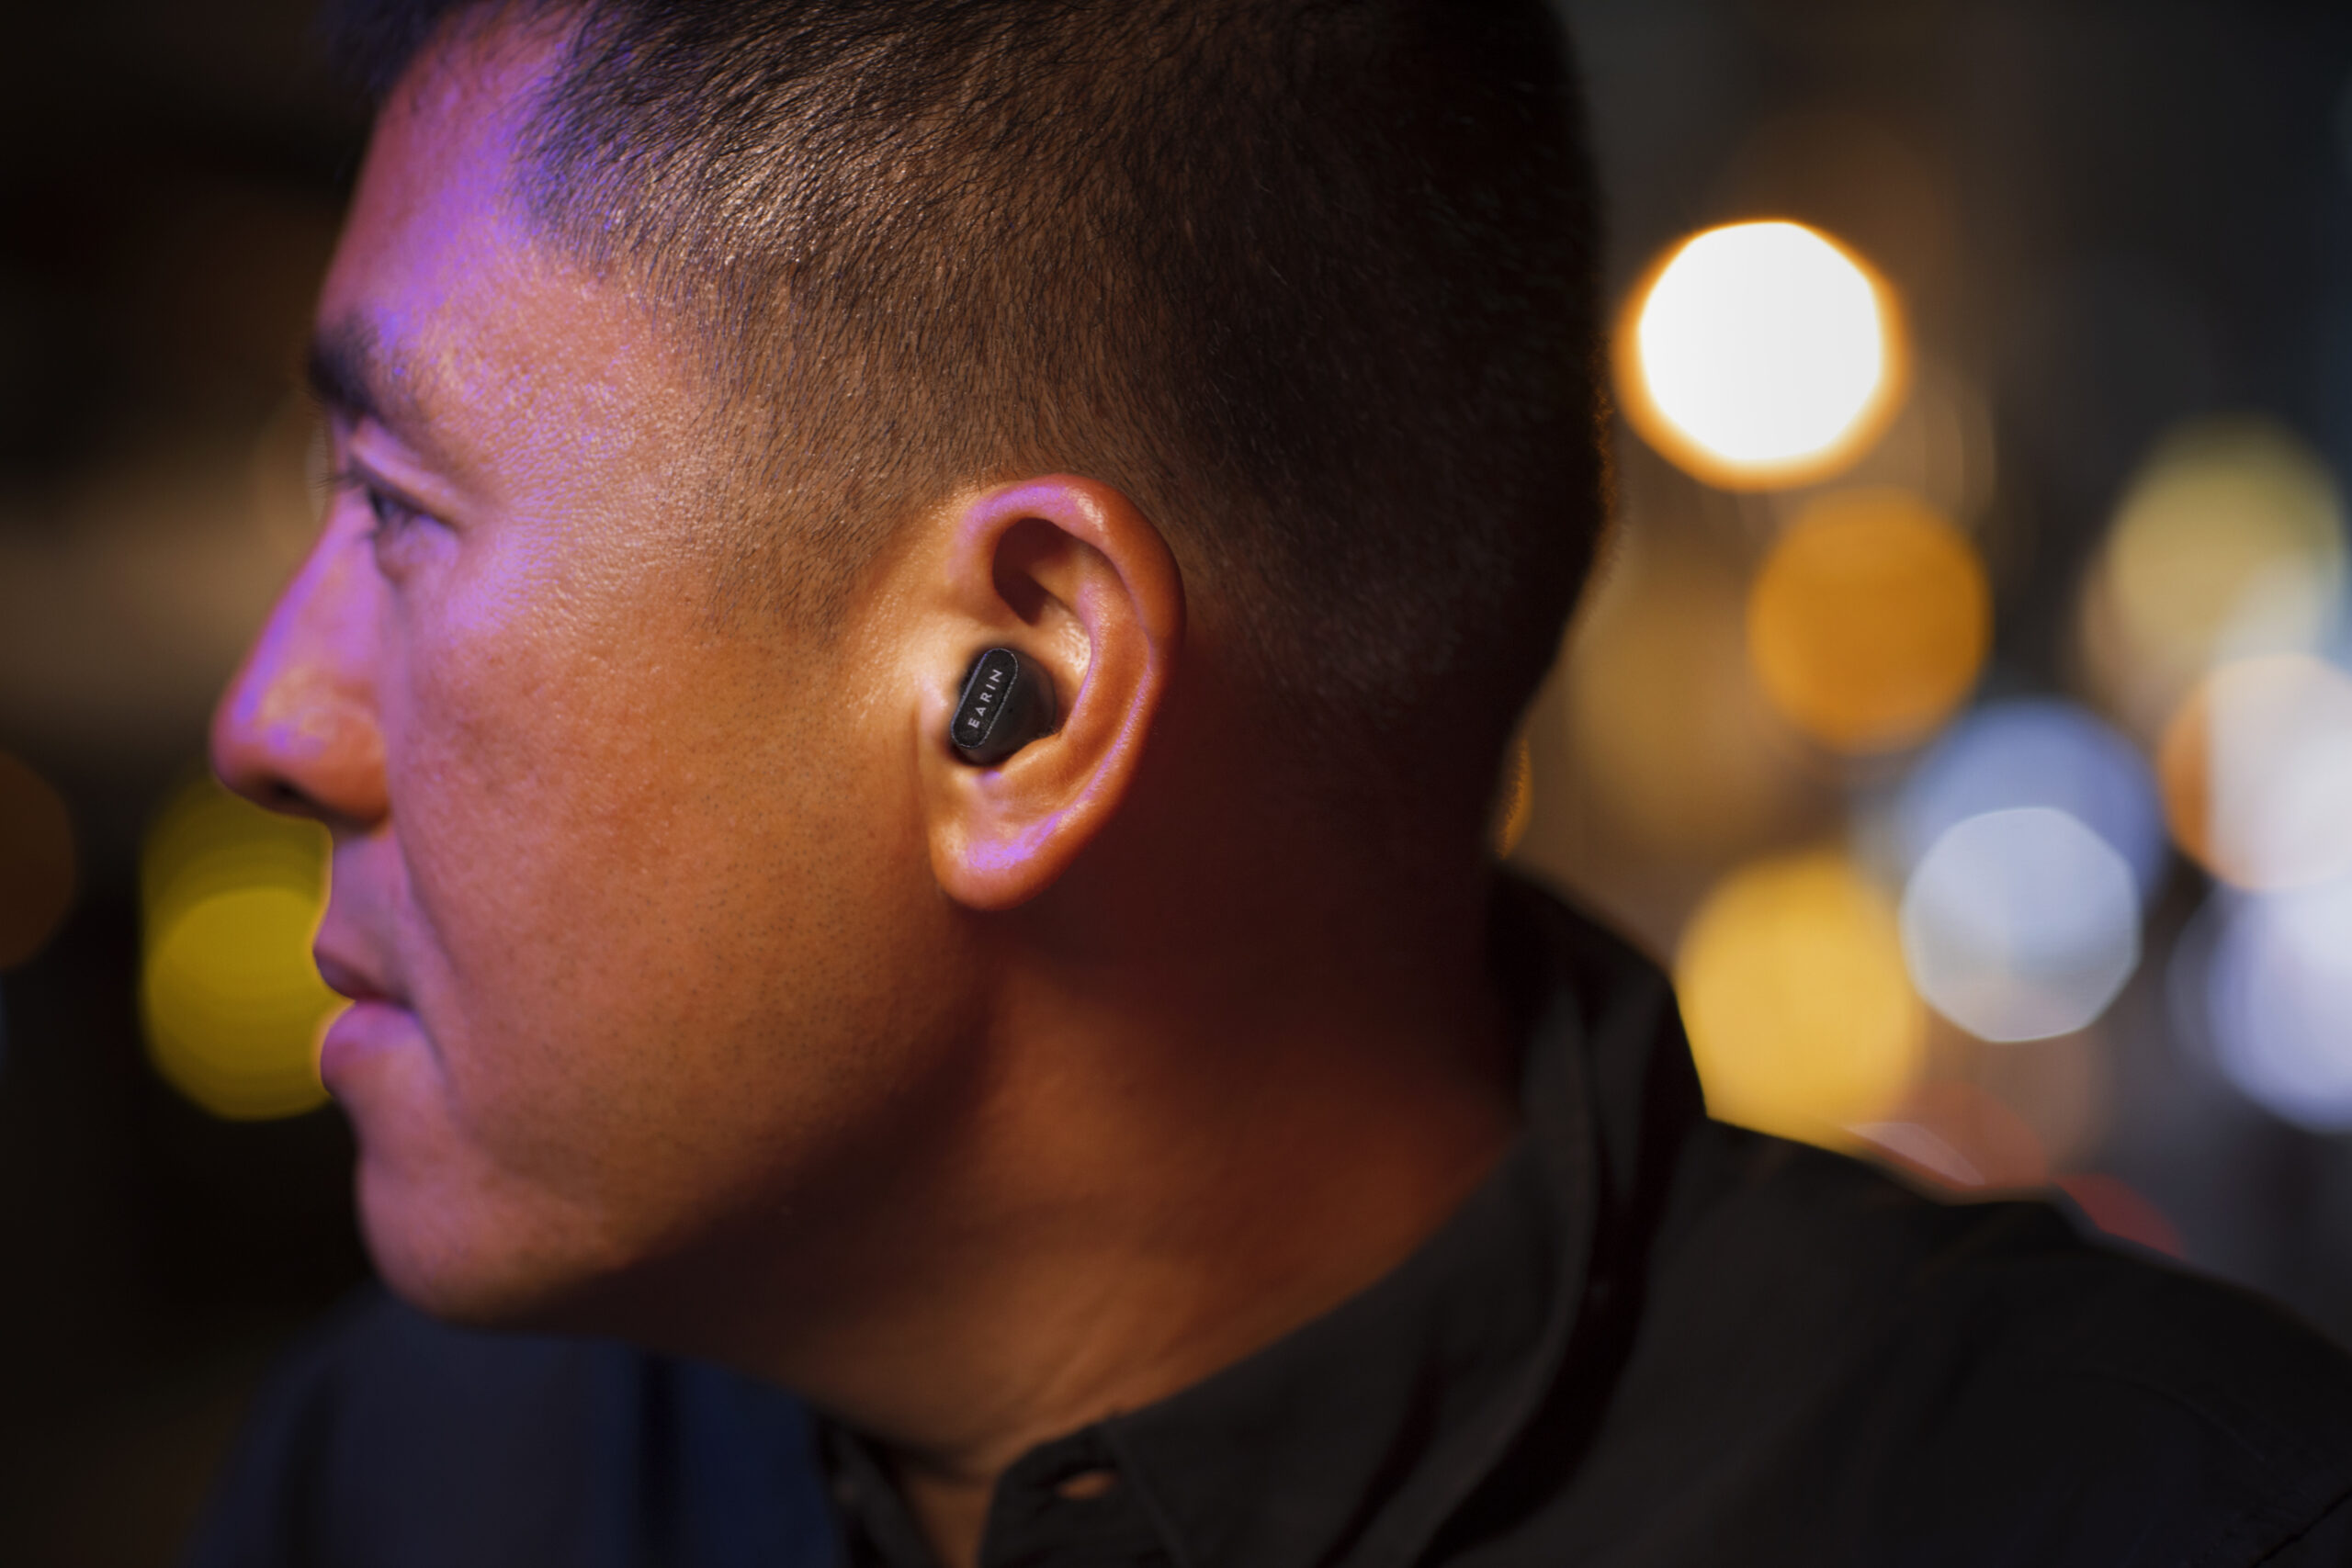 Earin, la innovadora empresa de tecnología detrás de Original True Wireless, ha anunciado hoy su tercera generación de auriculares True Wireless, el A-3.